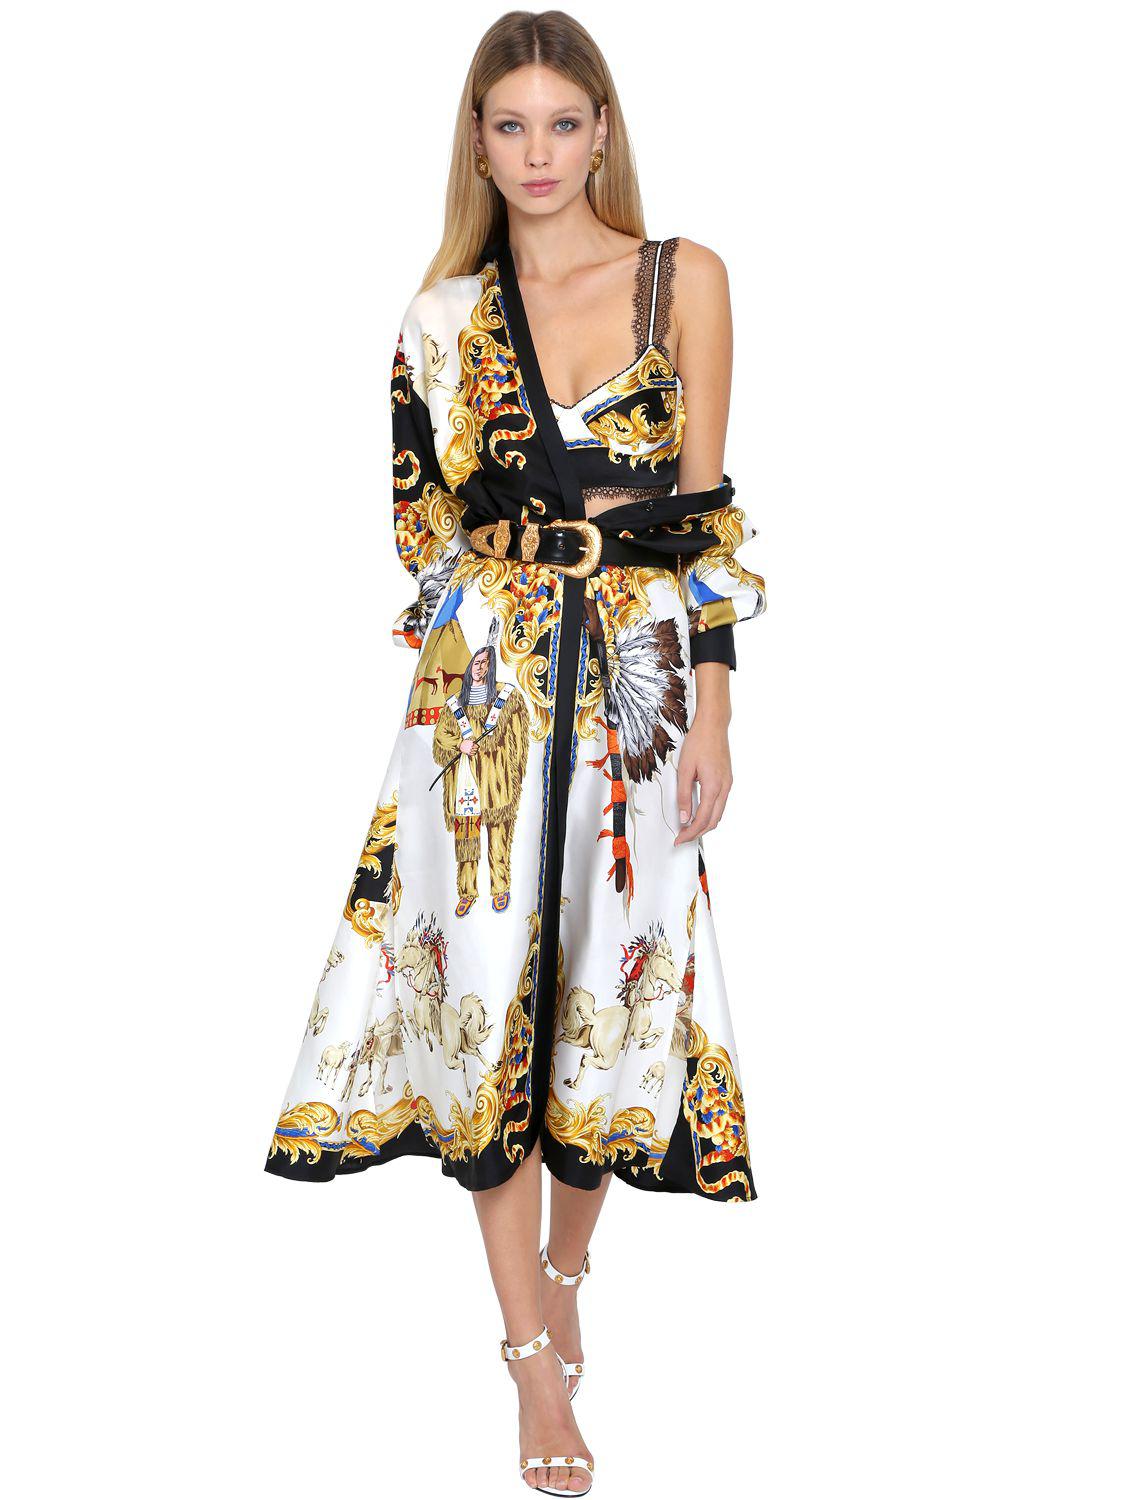 versace robe longue, Off 75%, www.bonadeu.com.br